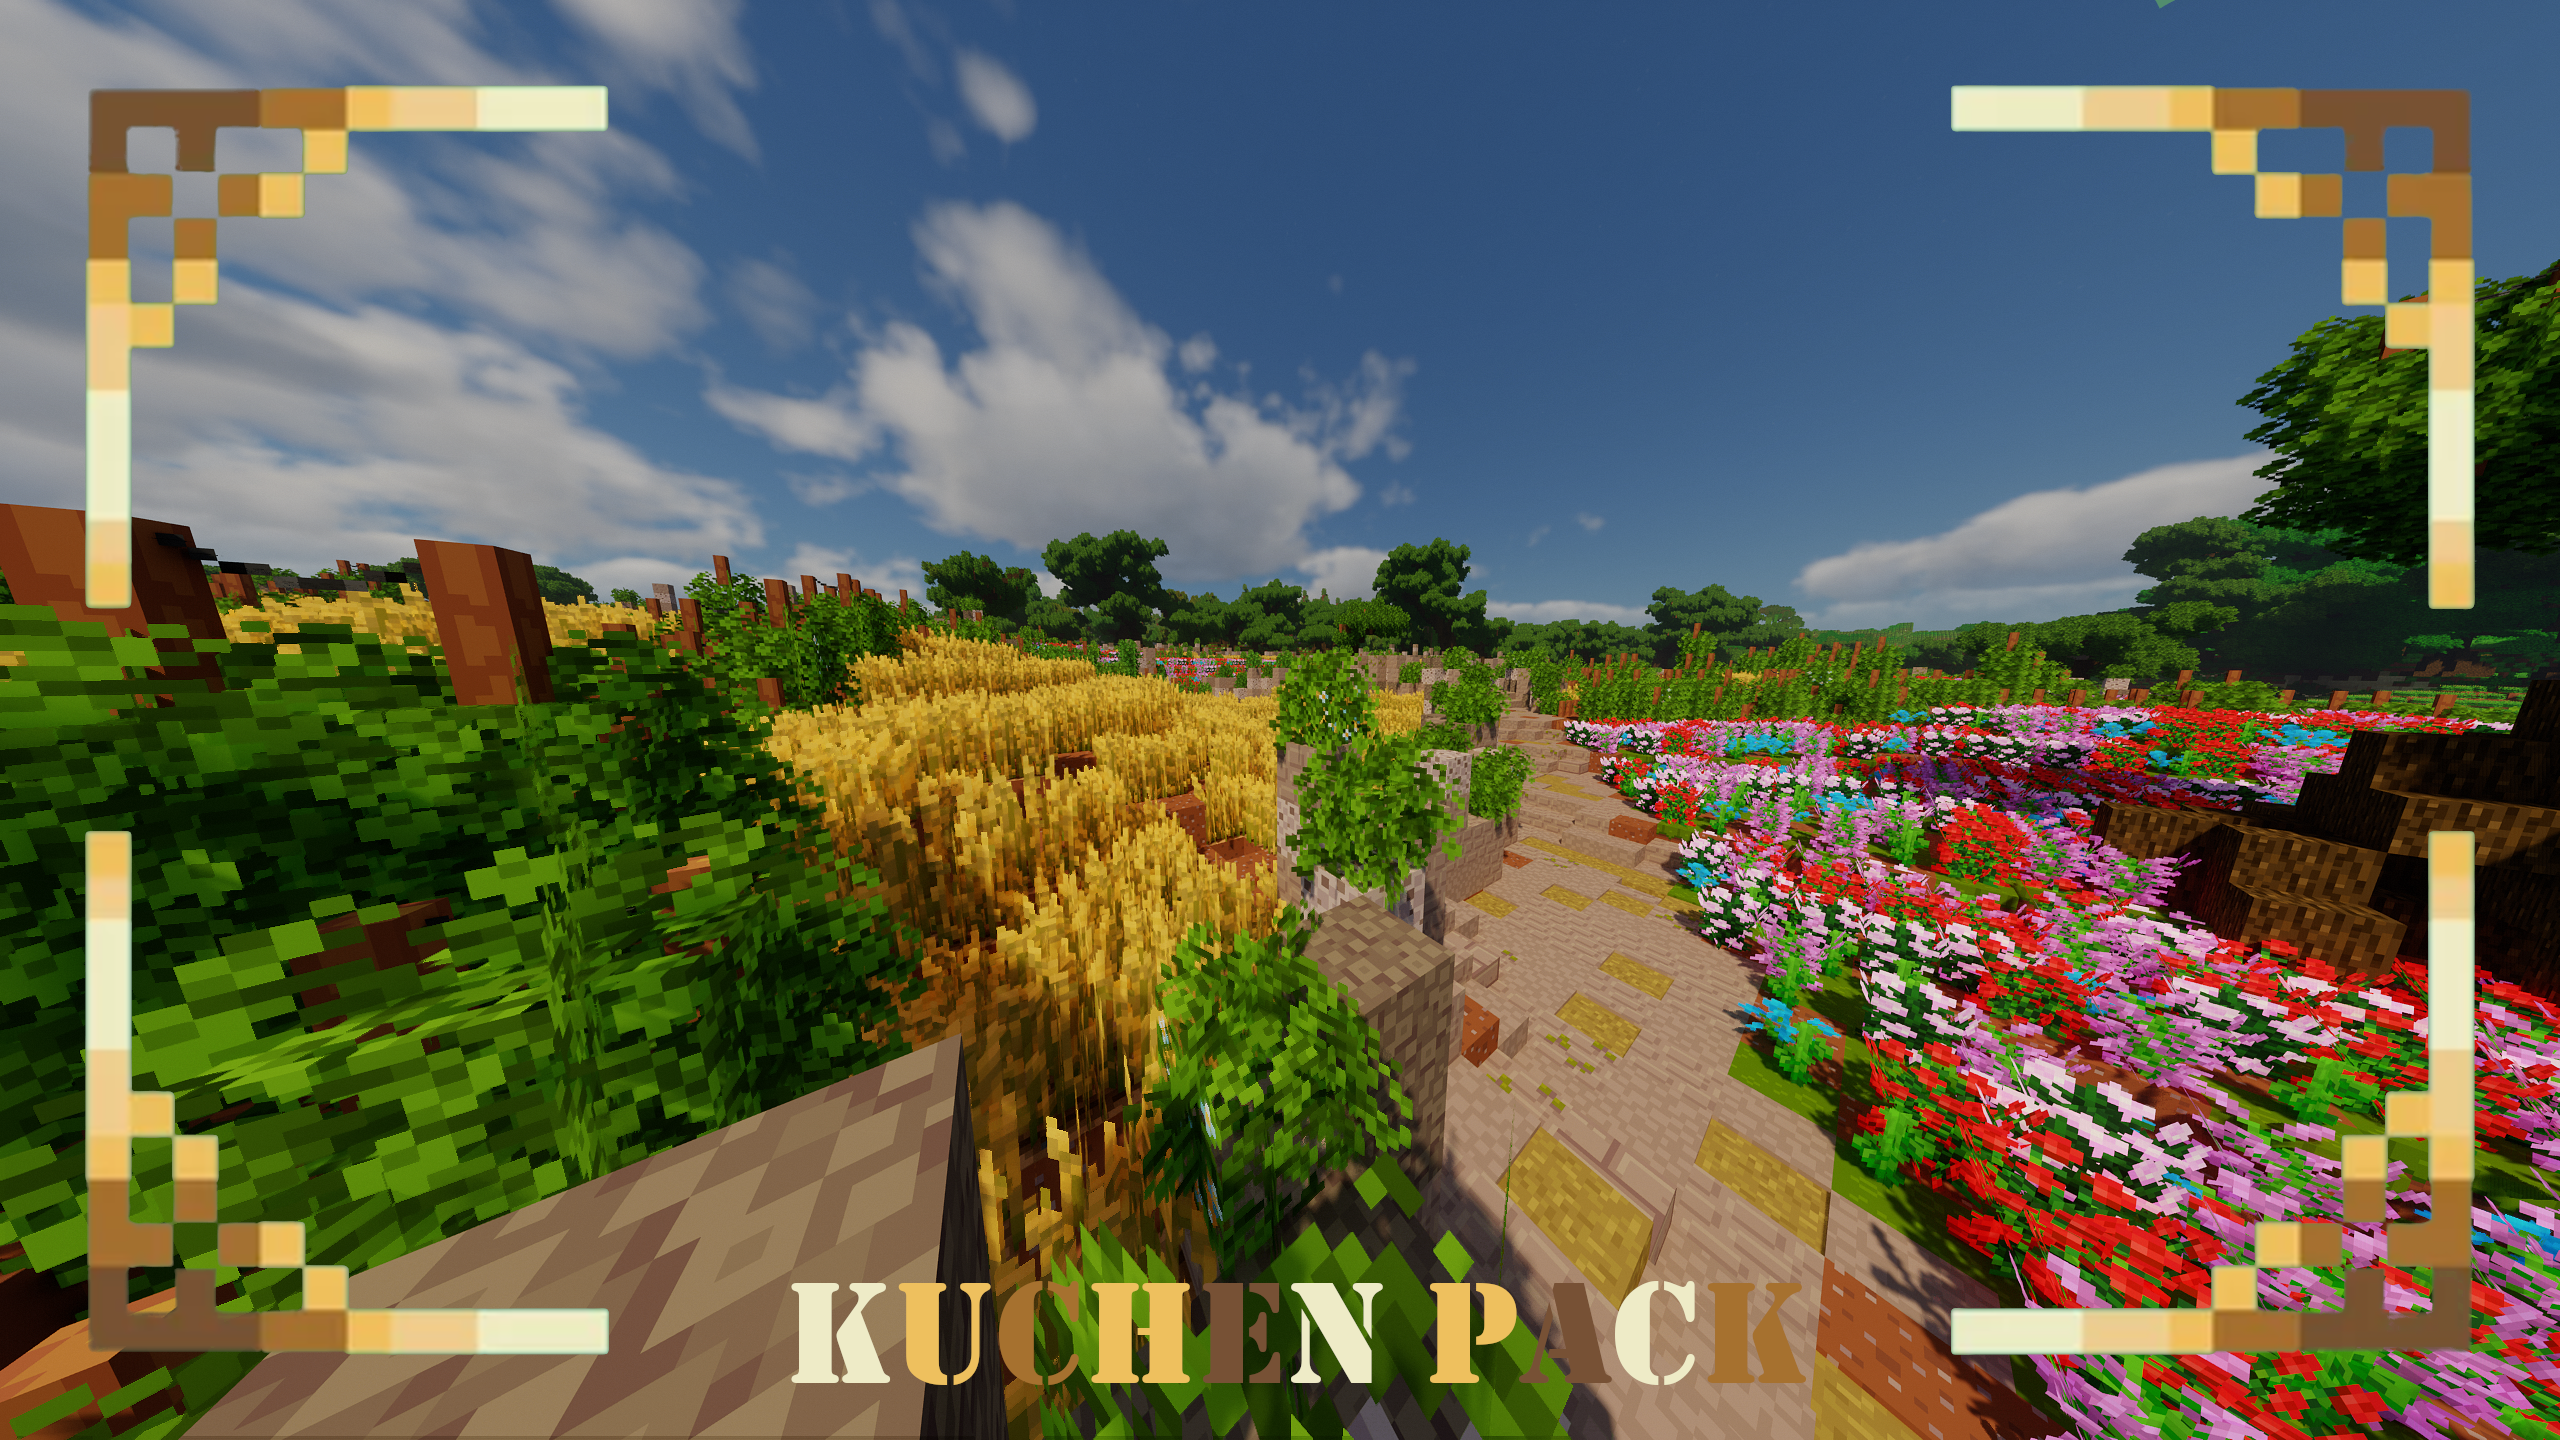 KuchenPack for Minecraft 1.19.2